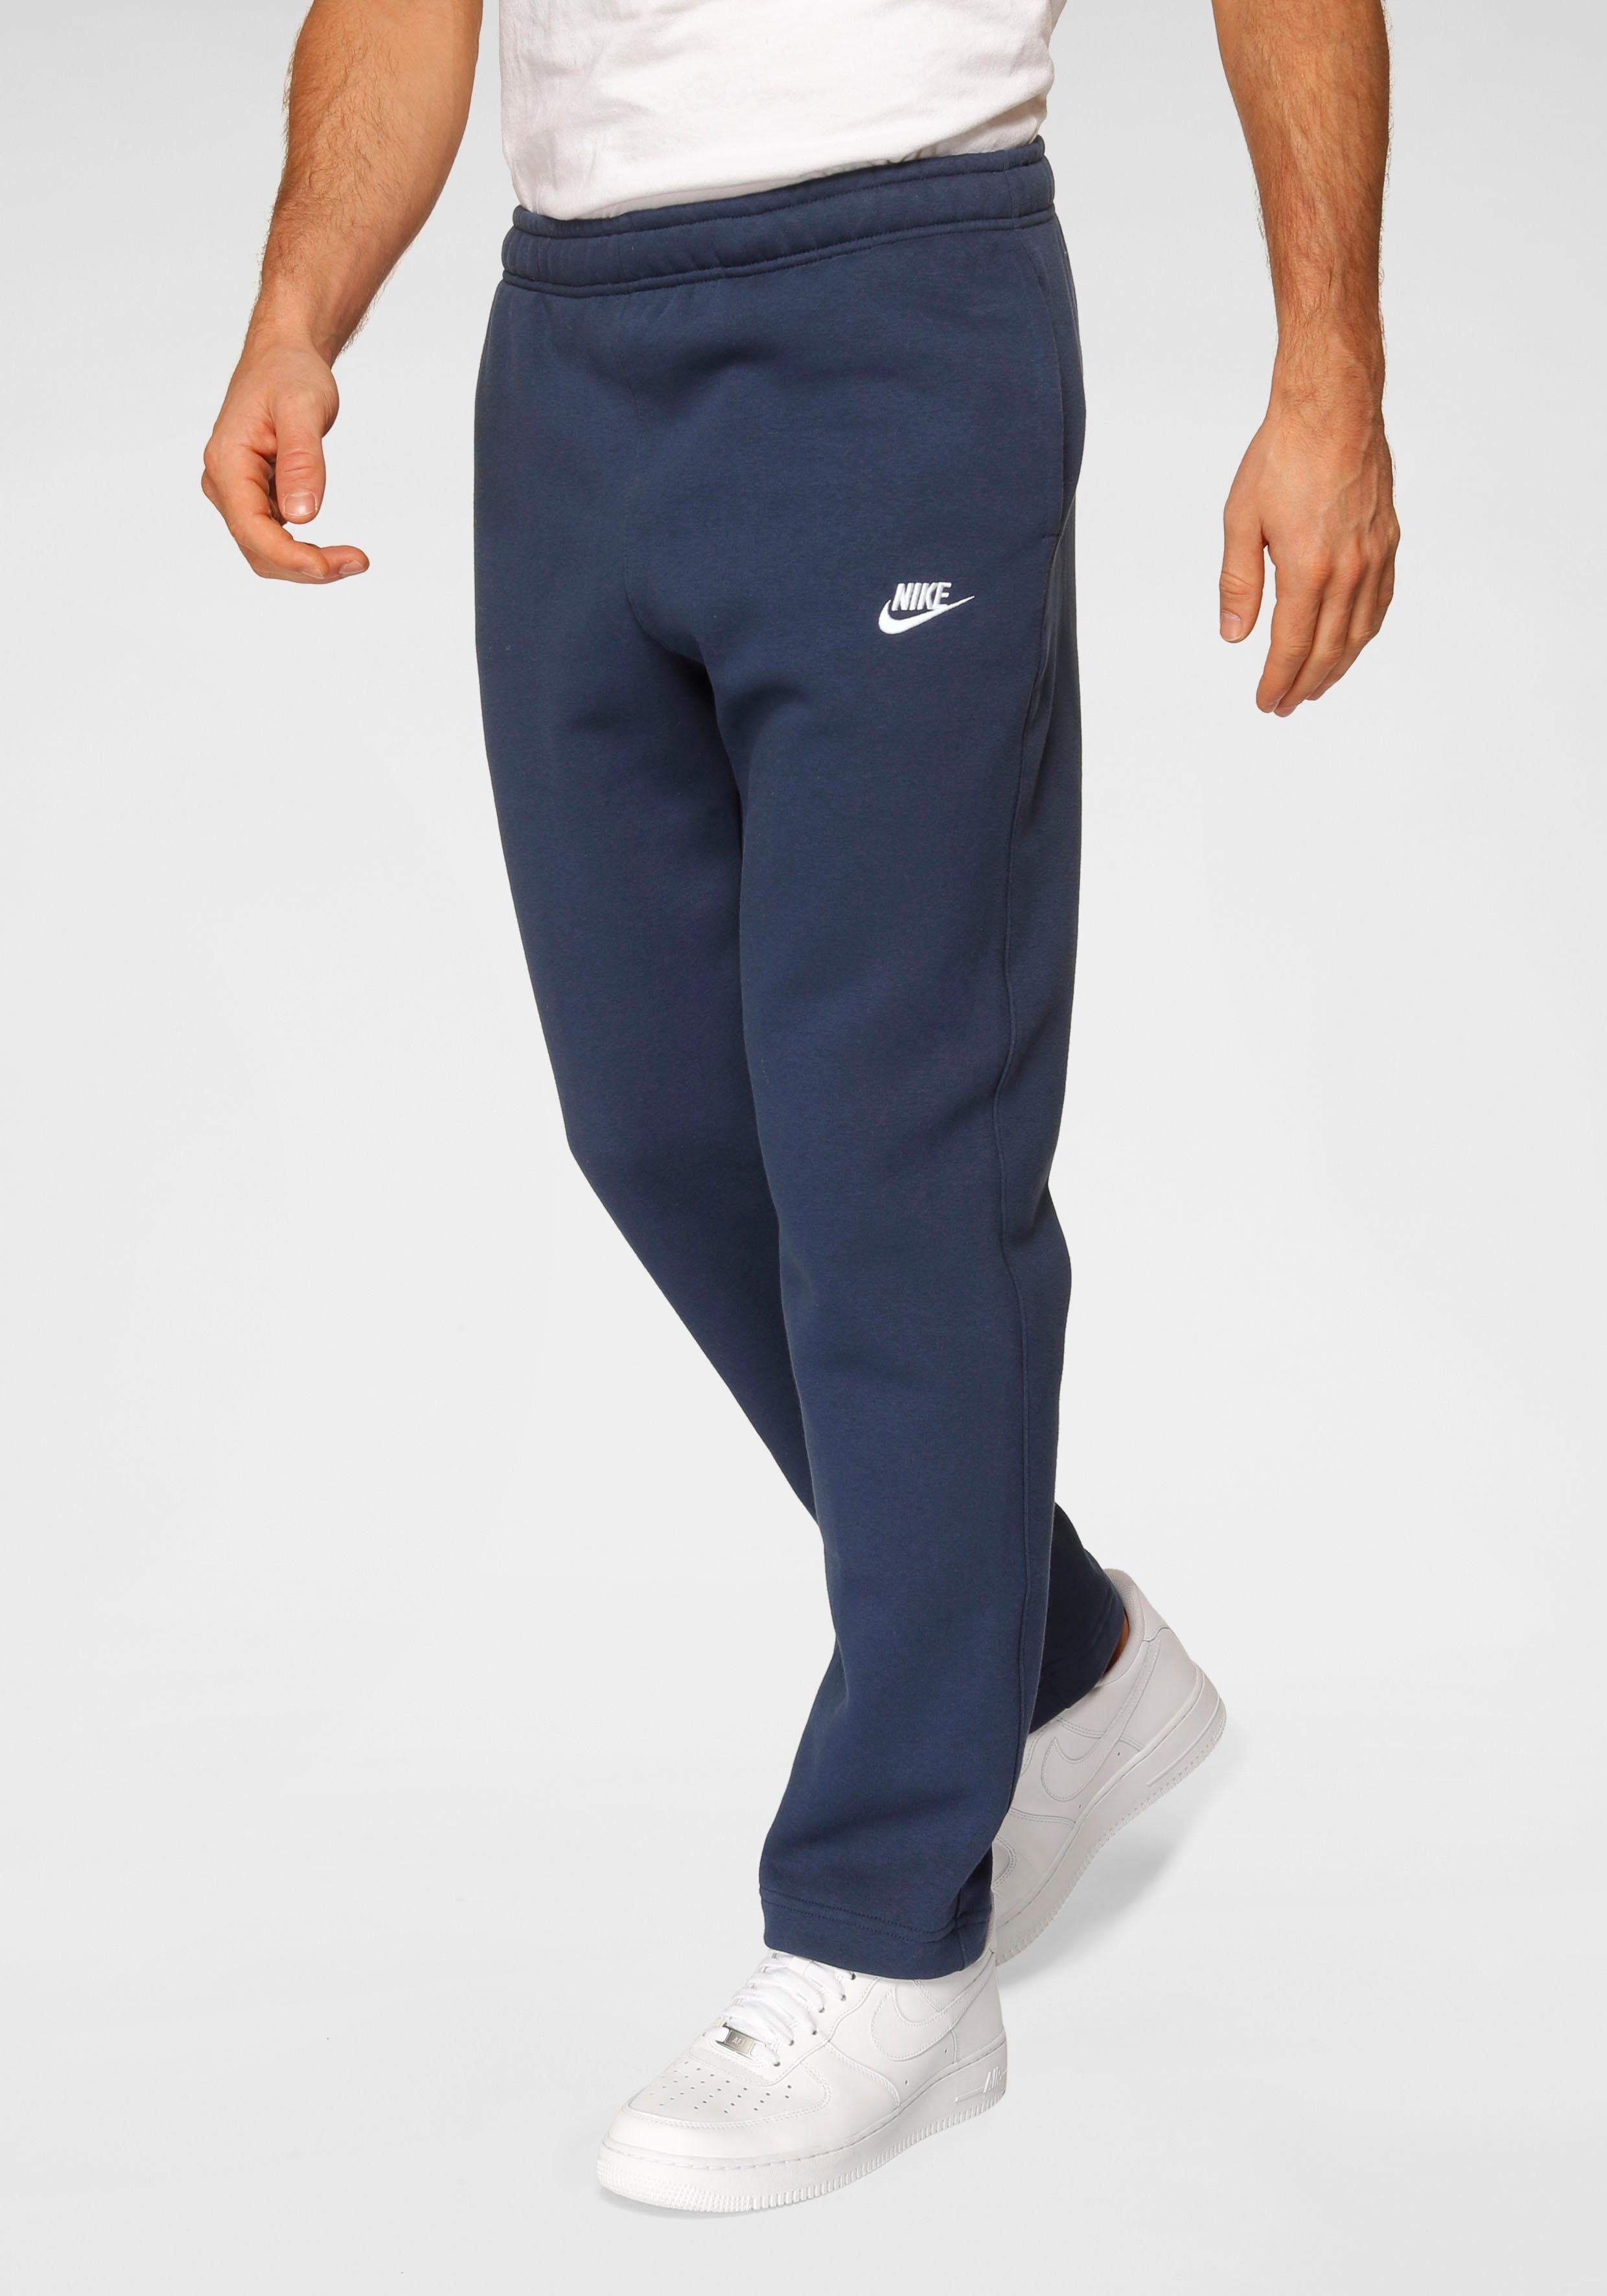 Club Sportswear Pants Fleece Nike Men\'s Jogginghose